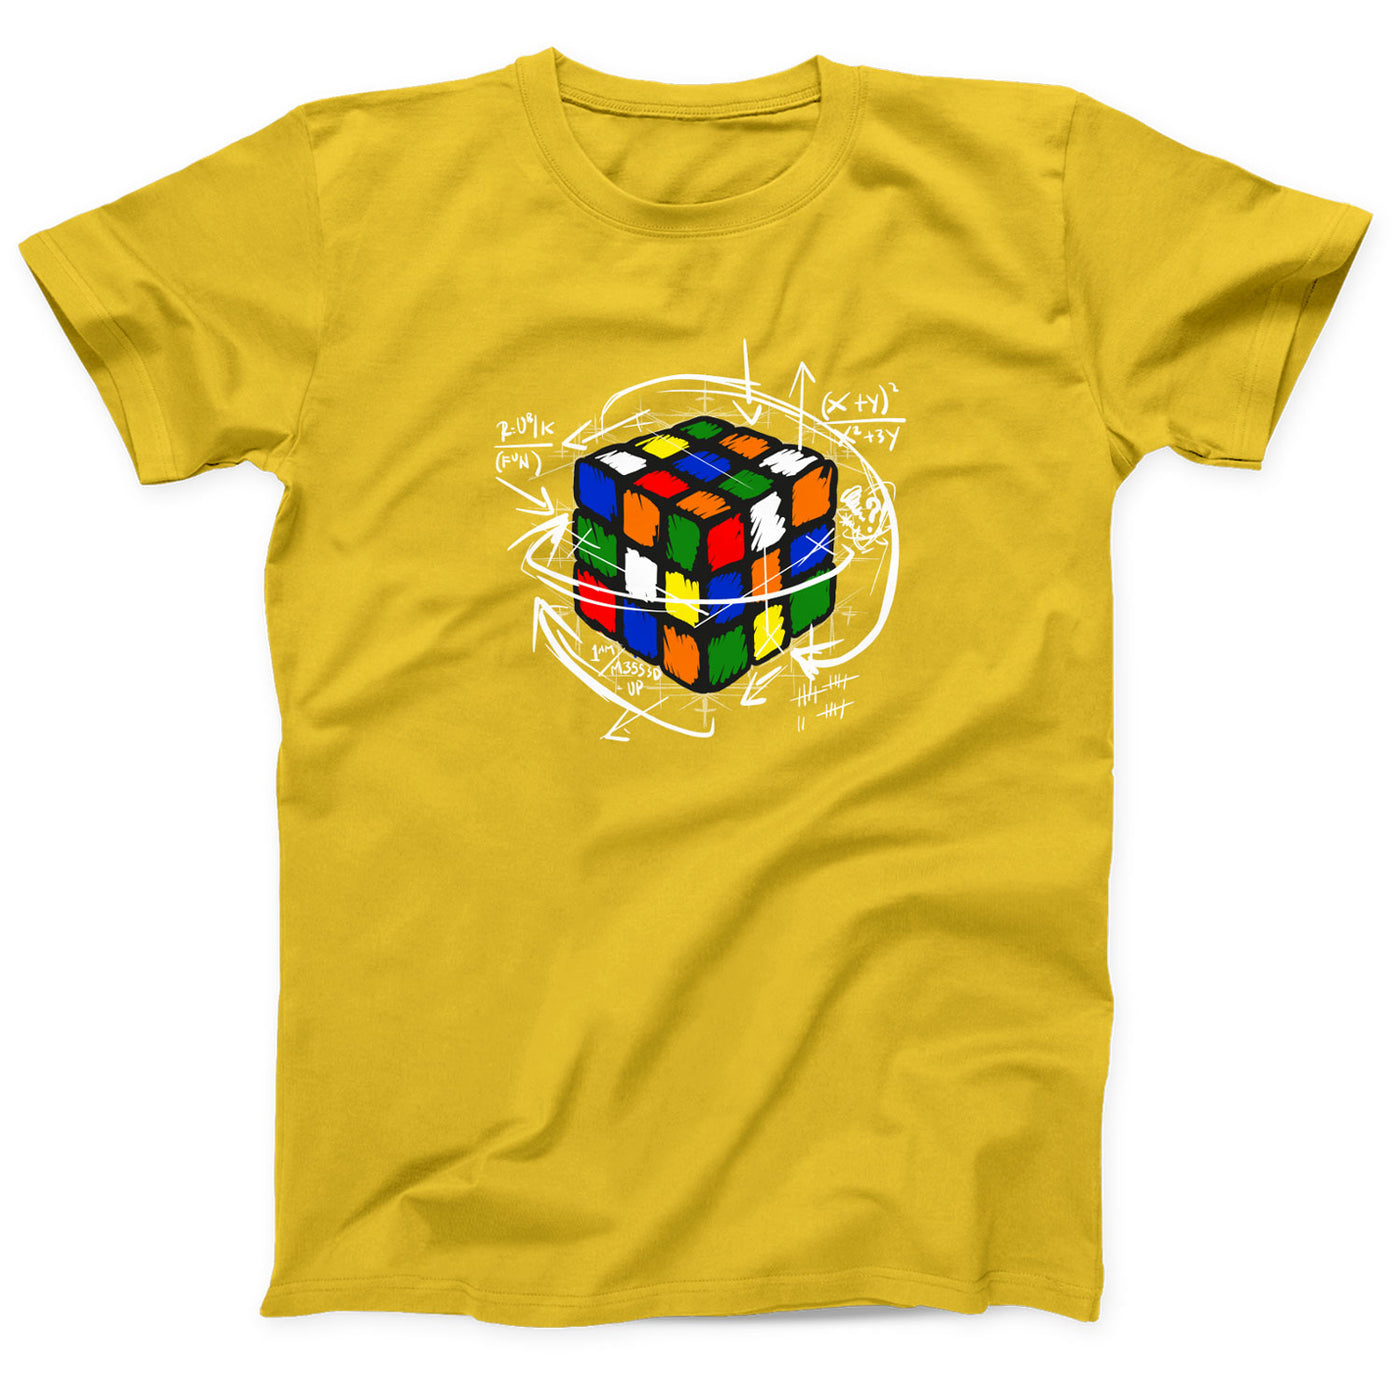 zauberwuerfel-shirt-gelb-dd74ts